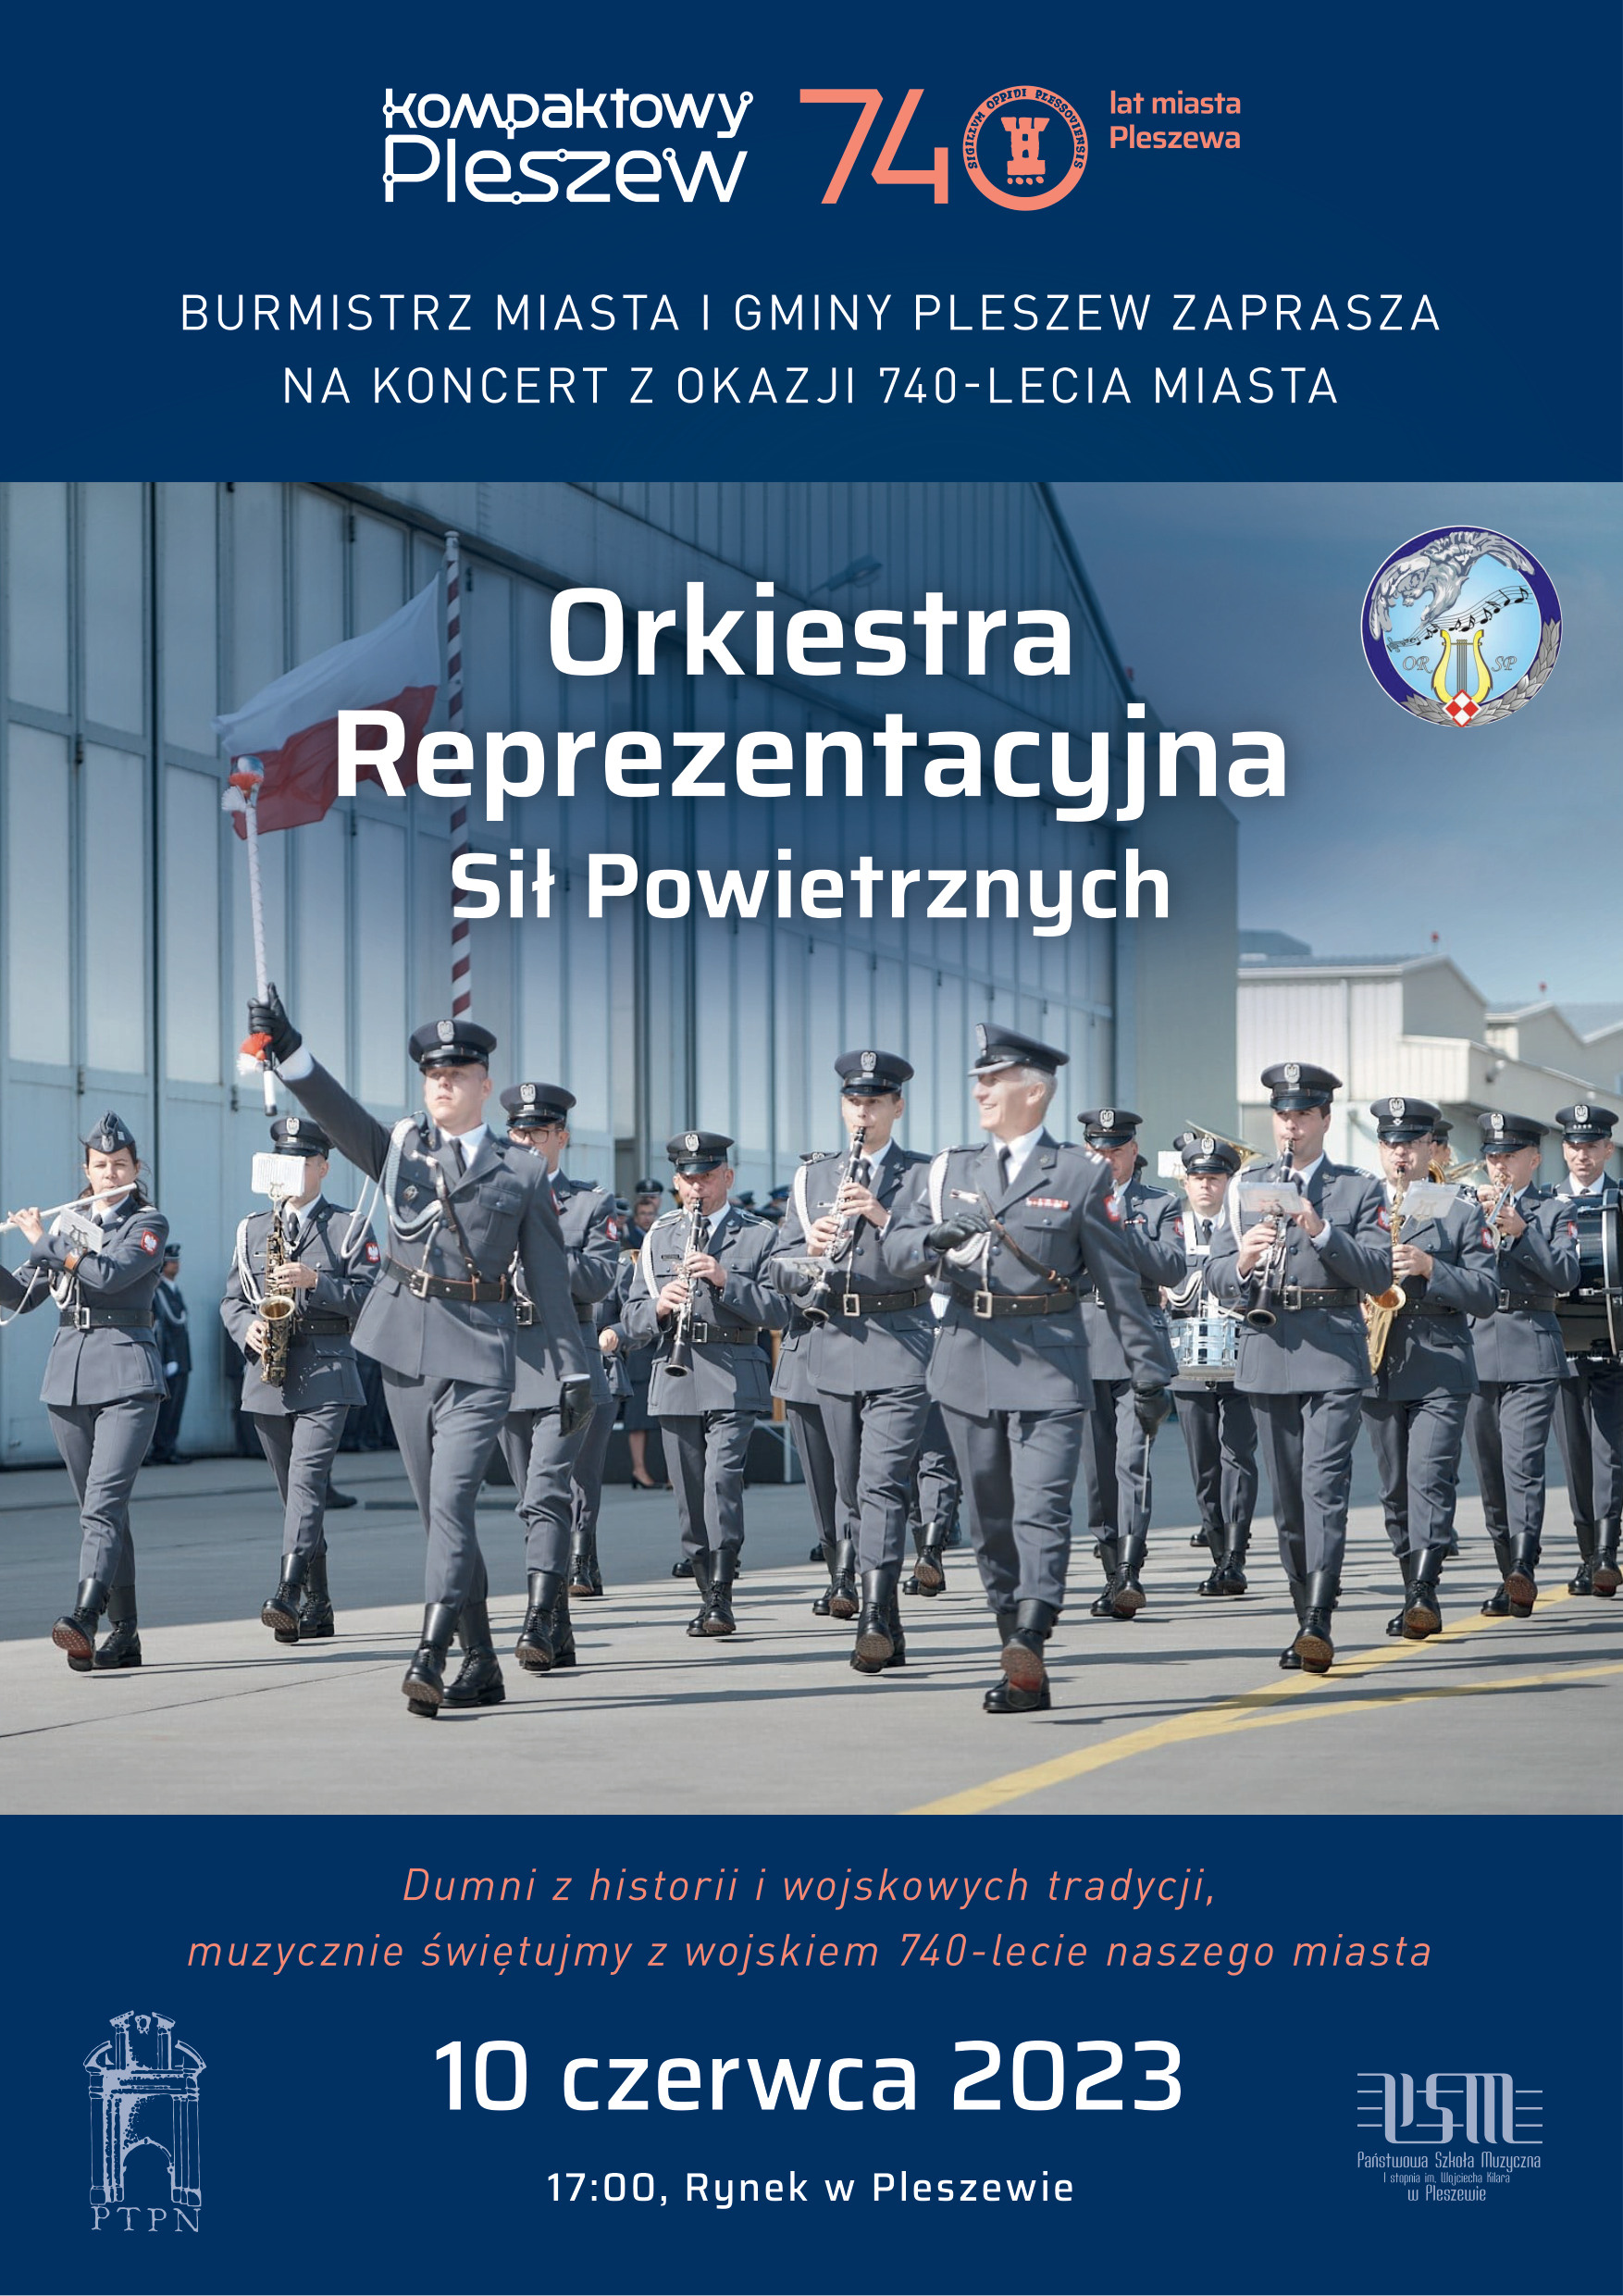 Plakat Koncertu Orkiestry Reprezentacyjnej Sił Powietrznych odbywającego się 10 czerwca 2023 roku o godzinie 17:00 na Rynku w Pleszewie.